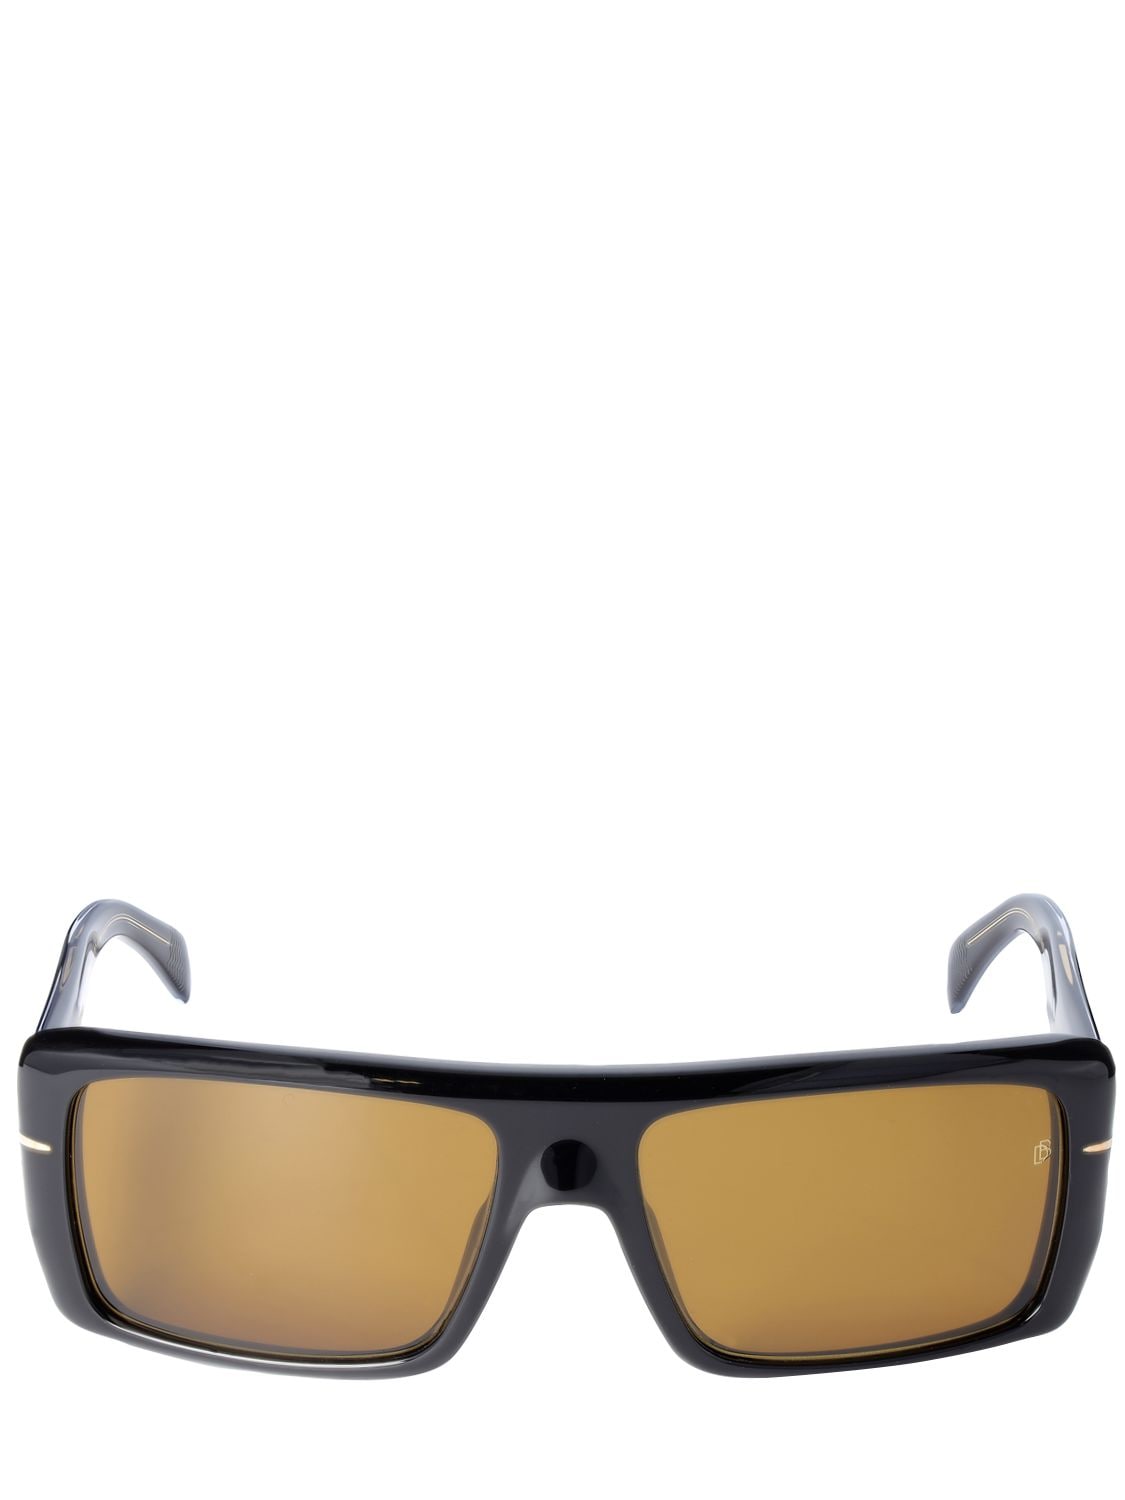 Db Eyewear By David Beckham Db Squared Acetate Sunglasses In Black,brown